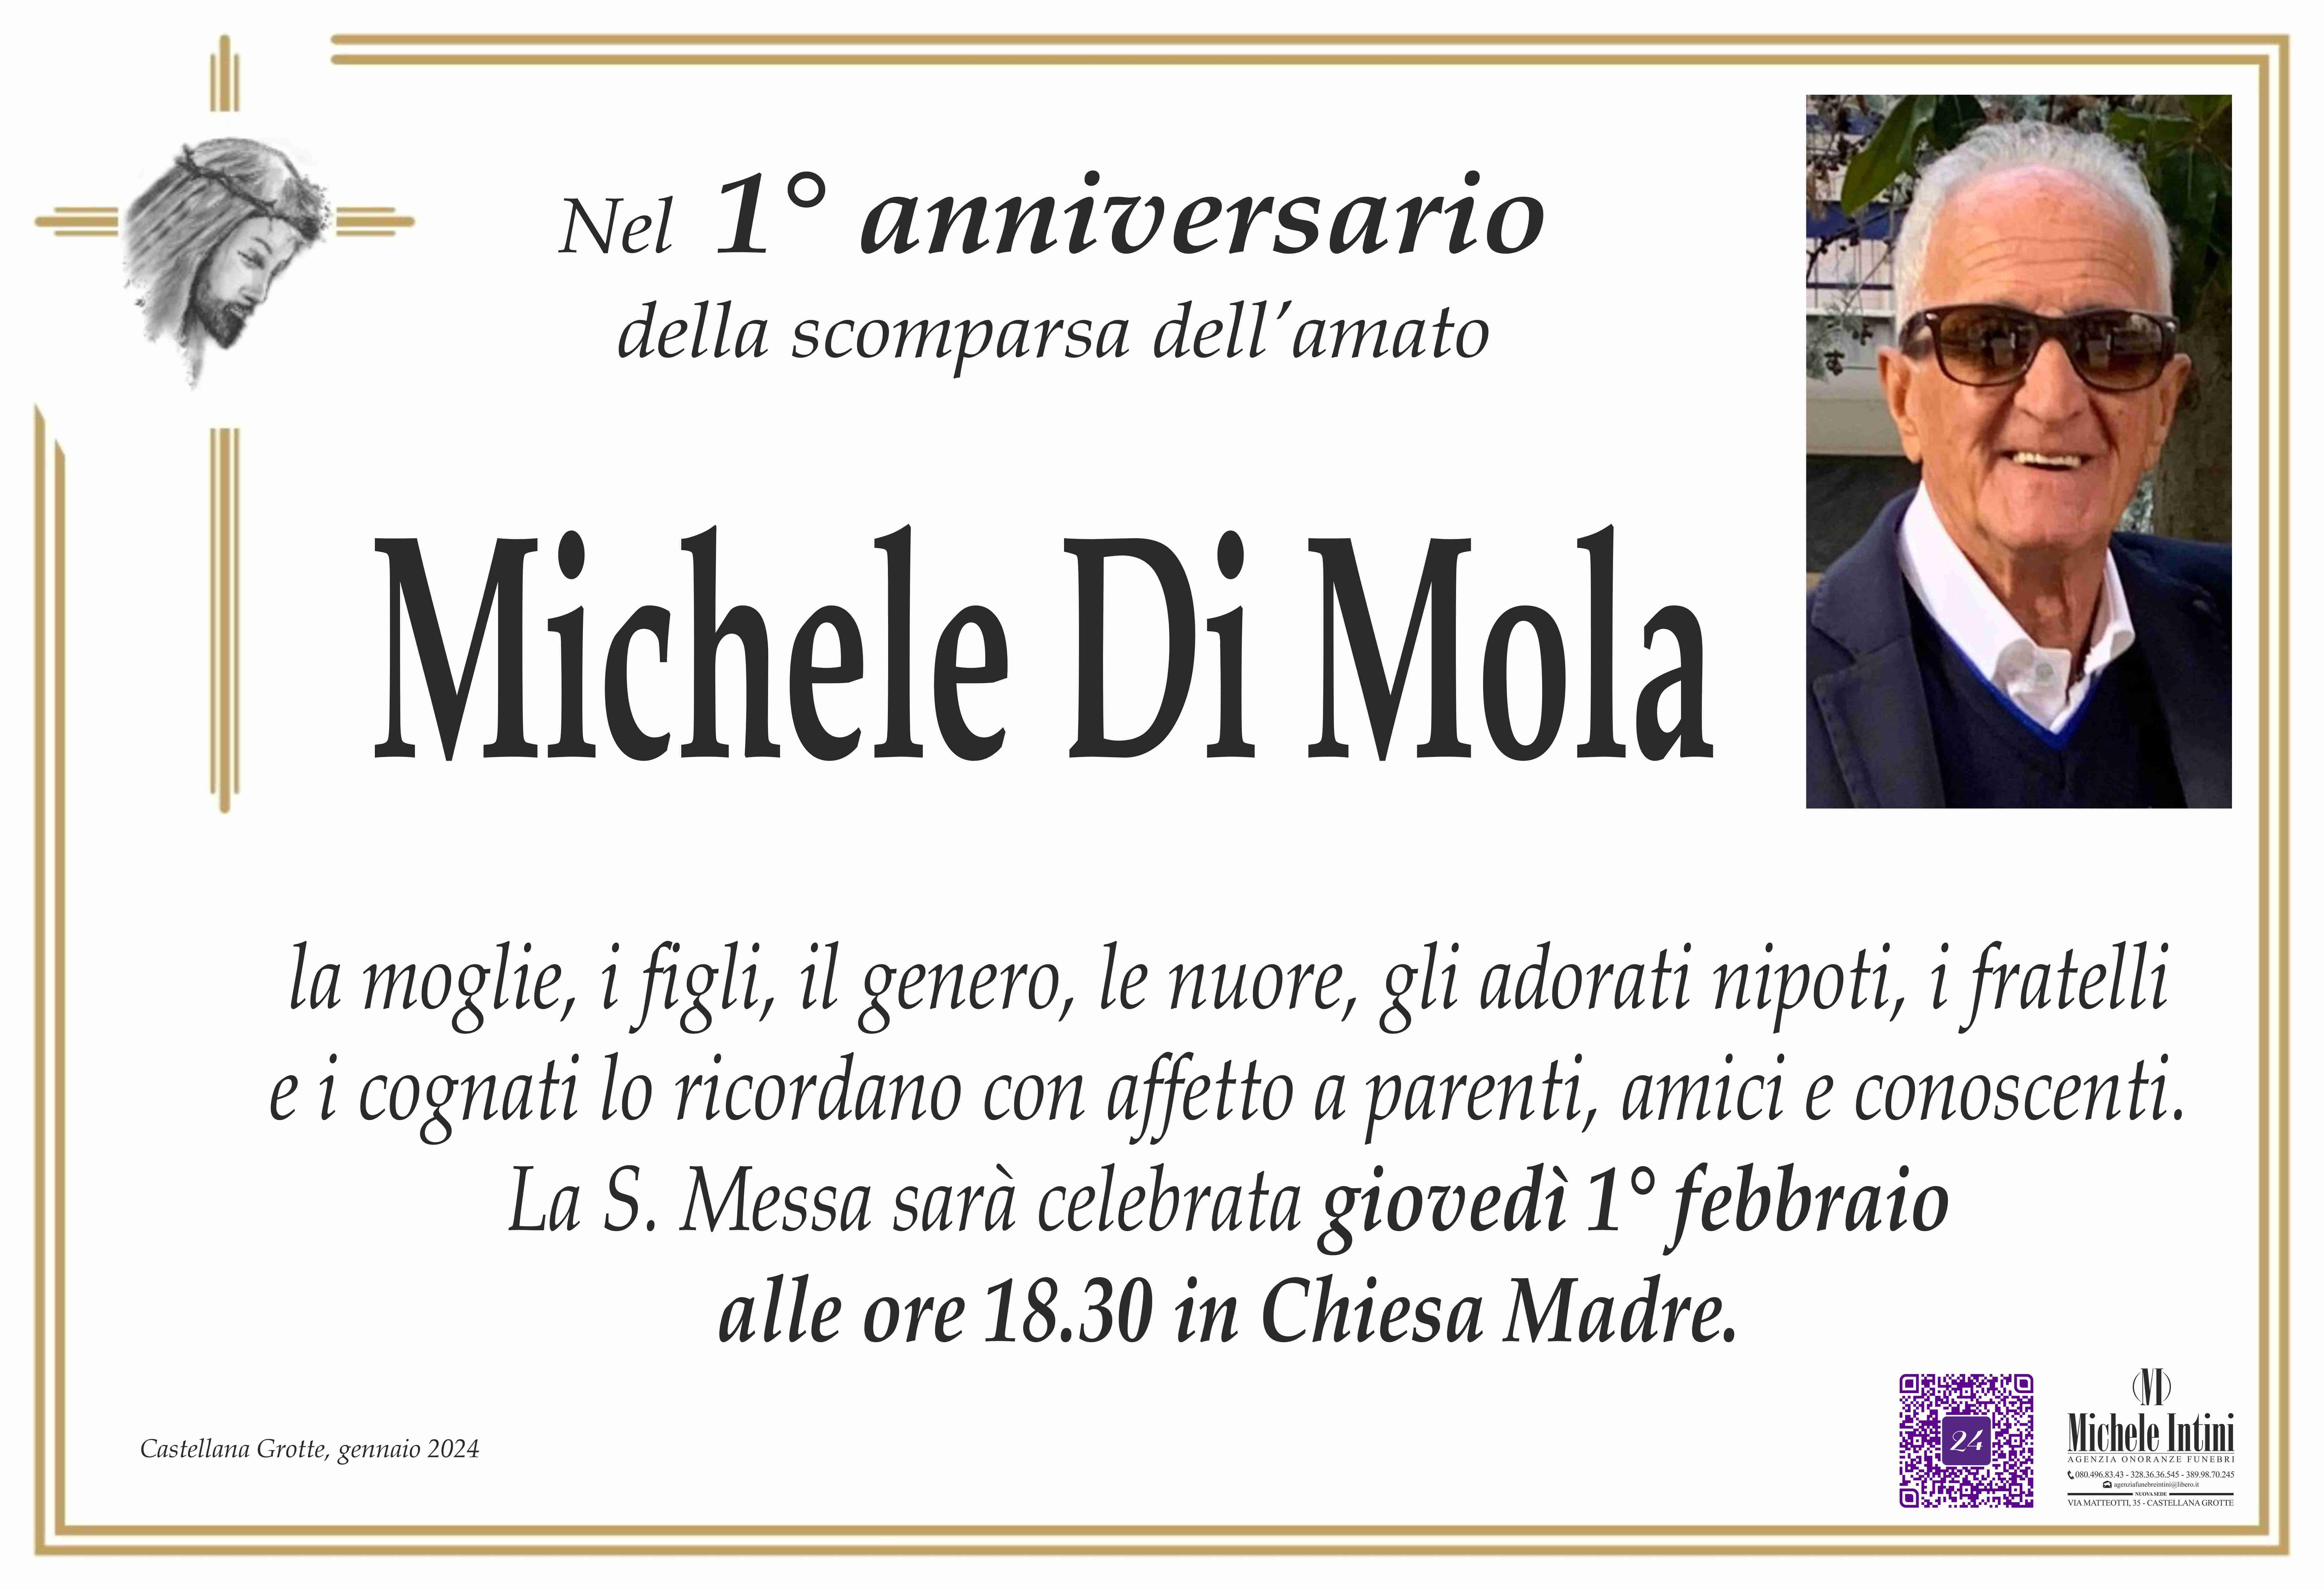 Michele Di Mola